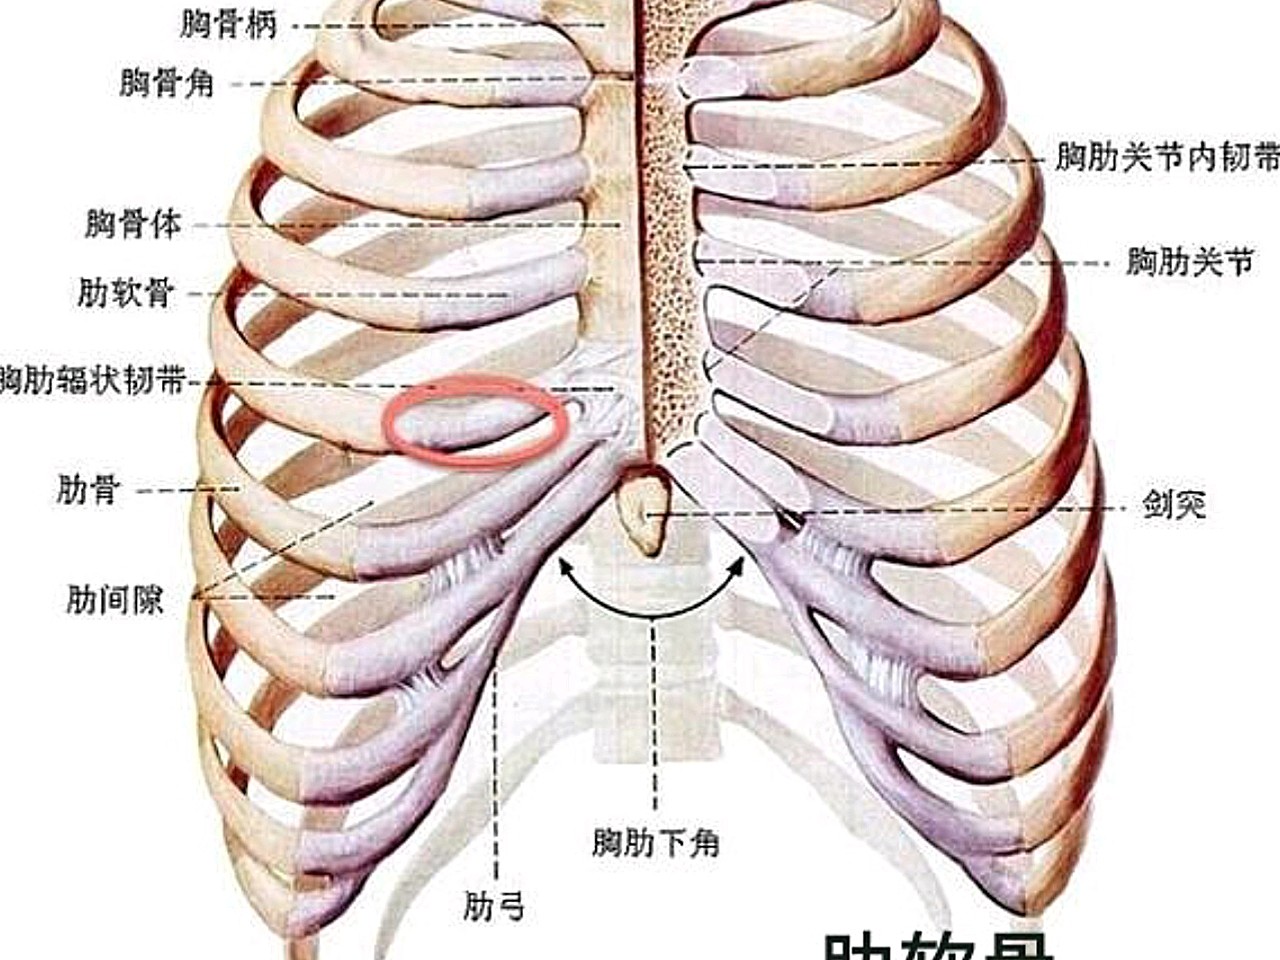 胸膛是哪个位置图片图片